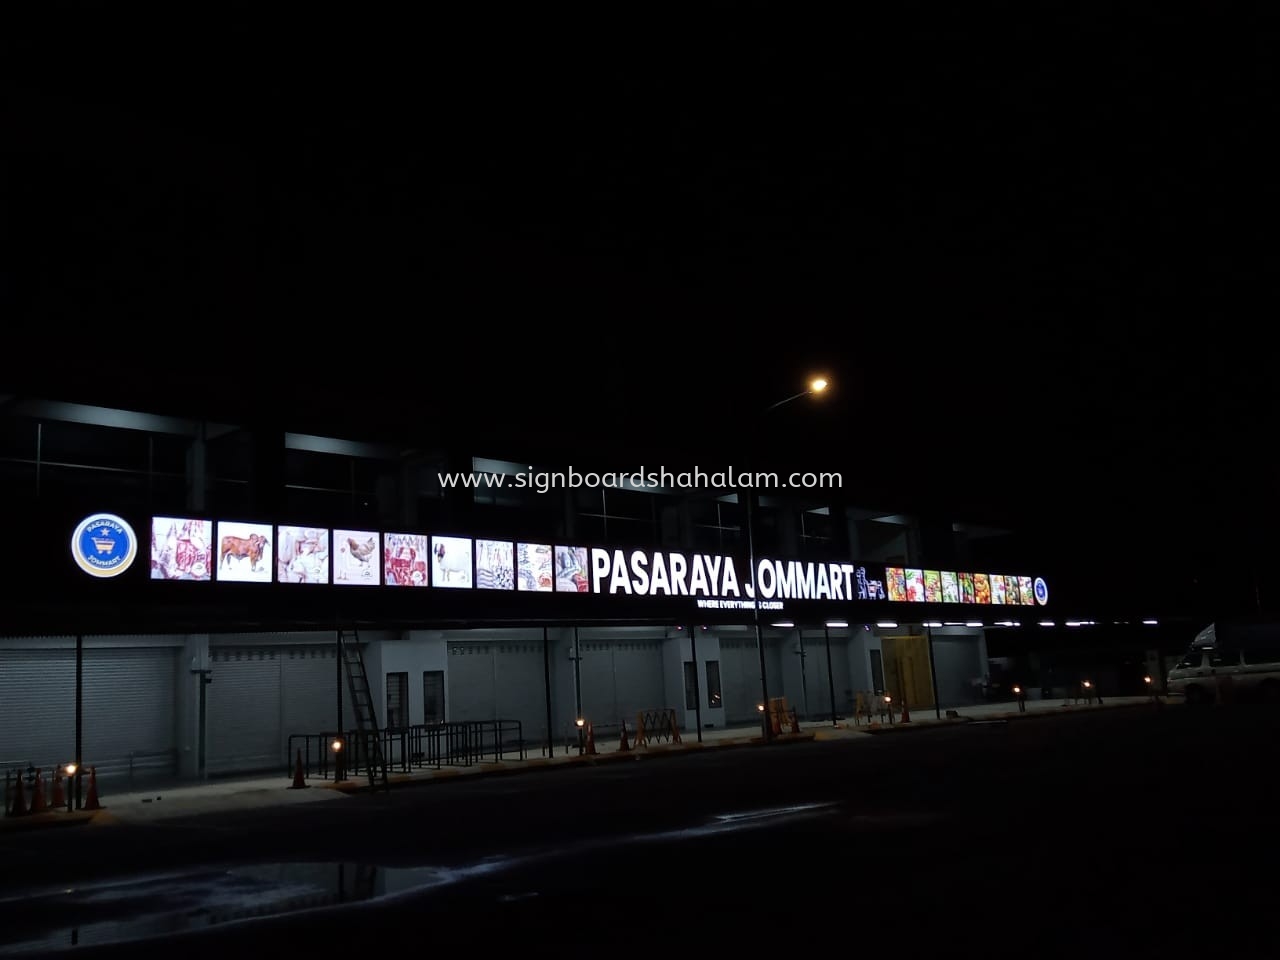 PASARAYA JOMMART OUTDOOR 3D LED FRONTLIT SIGNAGE 